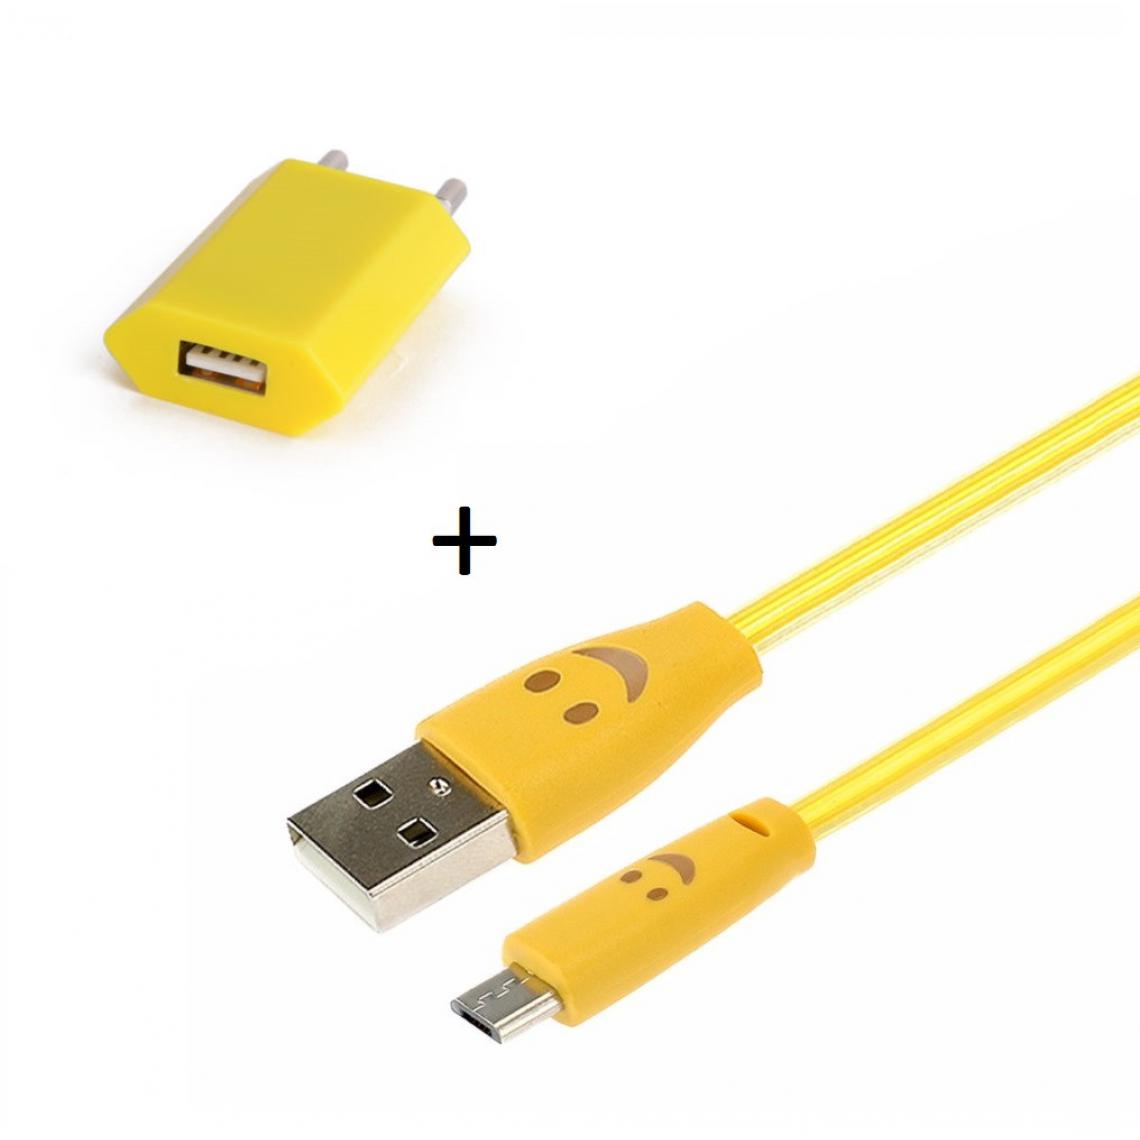 Shot - Pack Chargeur pour WIKO View 2 Plus Smartphone Micro USB (Cable Smiley LED + Prise Secteur USB) Android (JAUNE) - Chargeur secteur téléphone